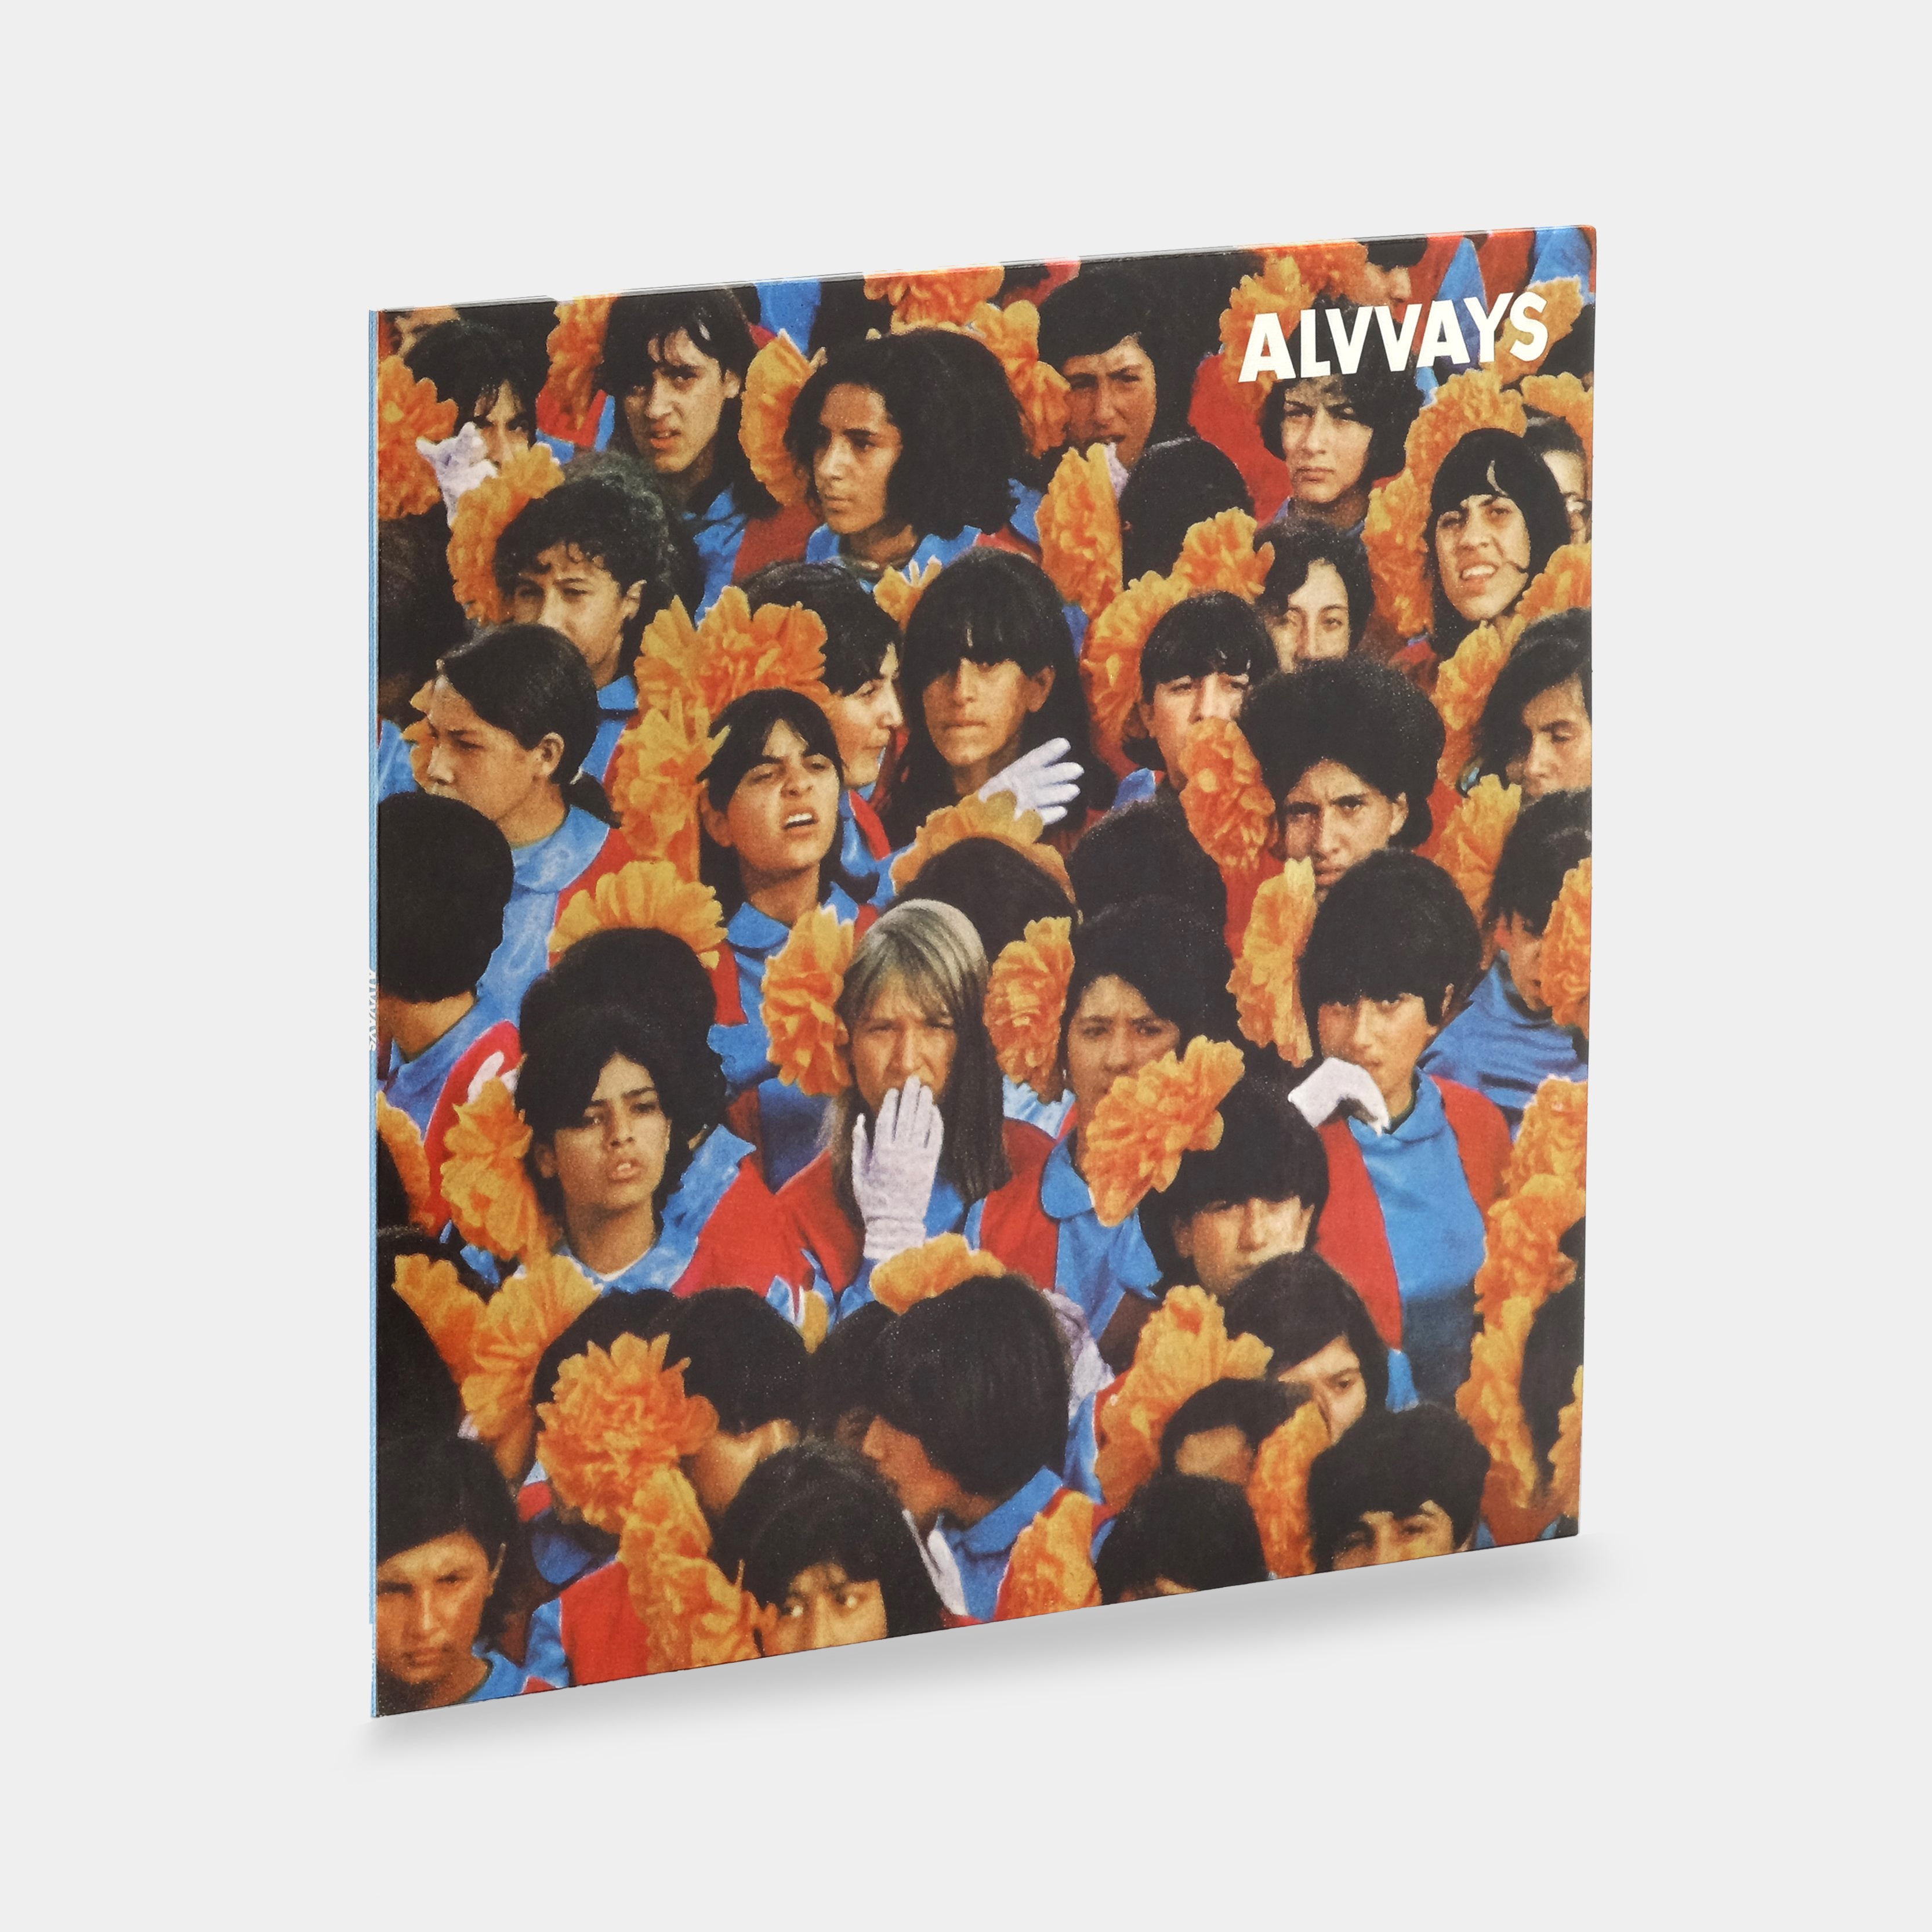 Alvvays - Alvvays LP Orange Vinyl Record